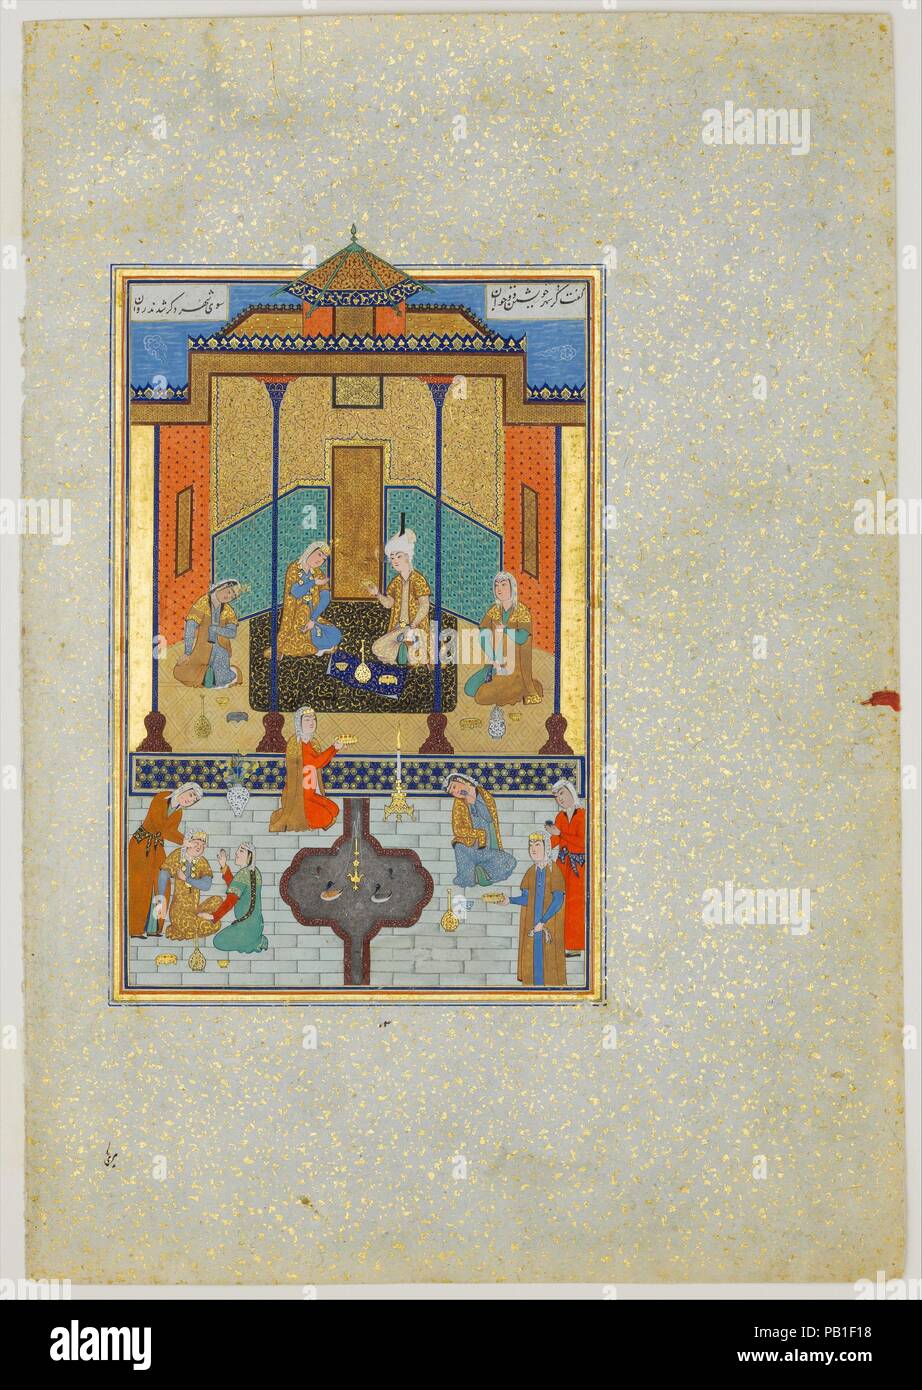 "Bahram Gur in die Sandale Palast am Donnerstag", Folio 230 von einem khamsa (Quintett) von nizami. Artist: Gemälde von Shaikh . Autor: Nizami (Ilyas Abu Muhammad Nizam al-Din von Ganja) (vermutlich 1141-1217). Kalligraph: Sultan Muhammad Nur (Ca. 1472-ca. 1536). Abmessungen: Malerei: H. 7 13/16-in. (19,8 cm) mit 4 5/8 in. (11,7 cm) Seite: H. 12 5/8 in. (32,1 cm) W. 8 3/4 in. (22,2 cm) Matte: H.19 cm. (48,9 cm) W. 14 1/4 in. (36,2 cm). Datum: A.H. 931 / A.D. 1524-25. Die Haft Paikar (Sieben Porträts) ist eine der fünf Gedichte der khamsa von nizami. Die Poesie ist mystisch und veranschaulichen die Stockfoto